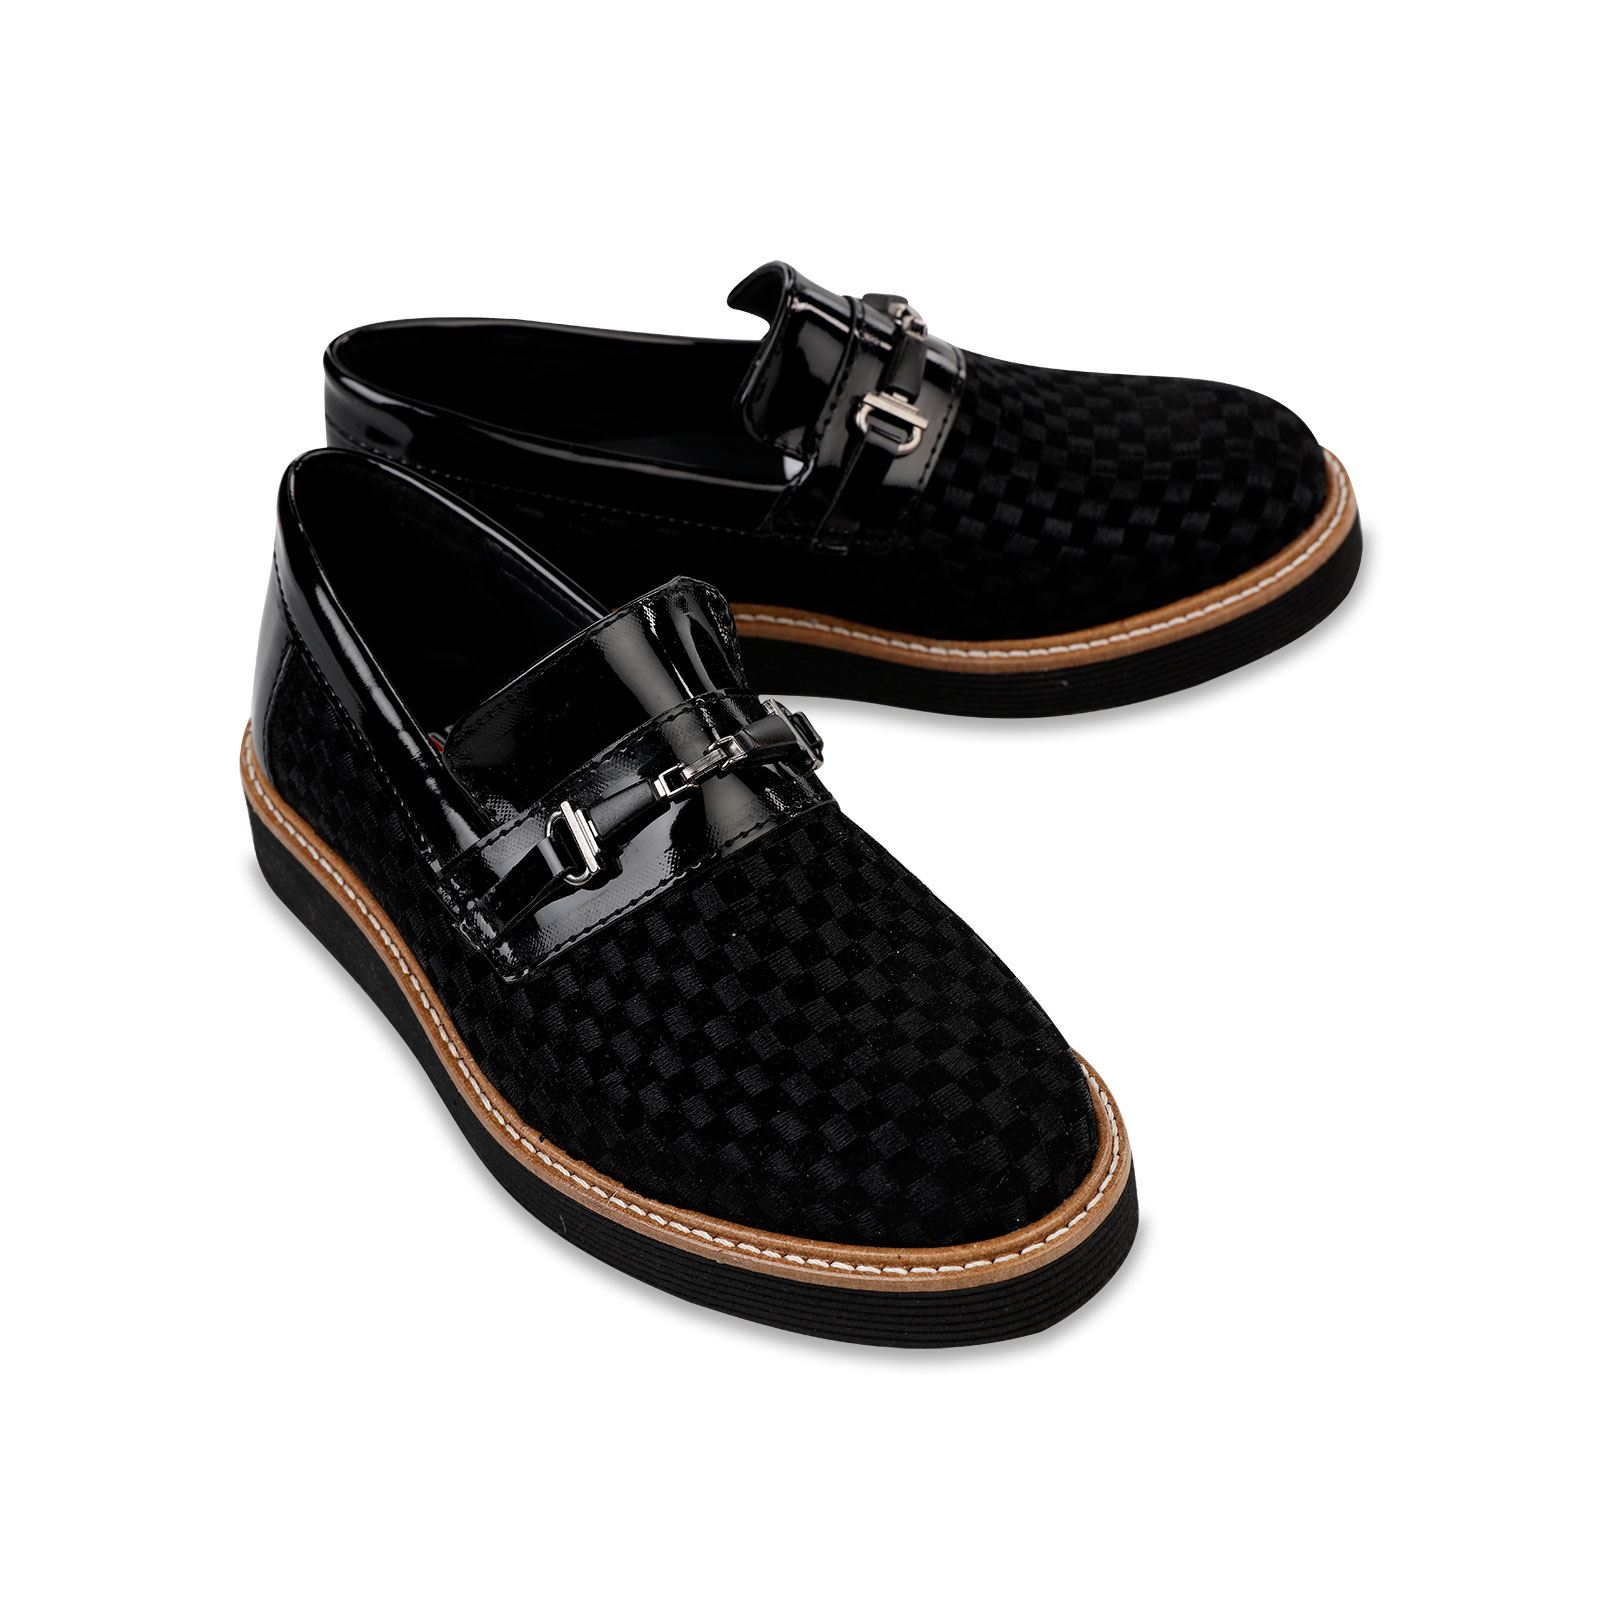 Harli Erkek Çocuk Klasik Ayakkabı 36-40 Numara Siyah